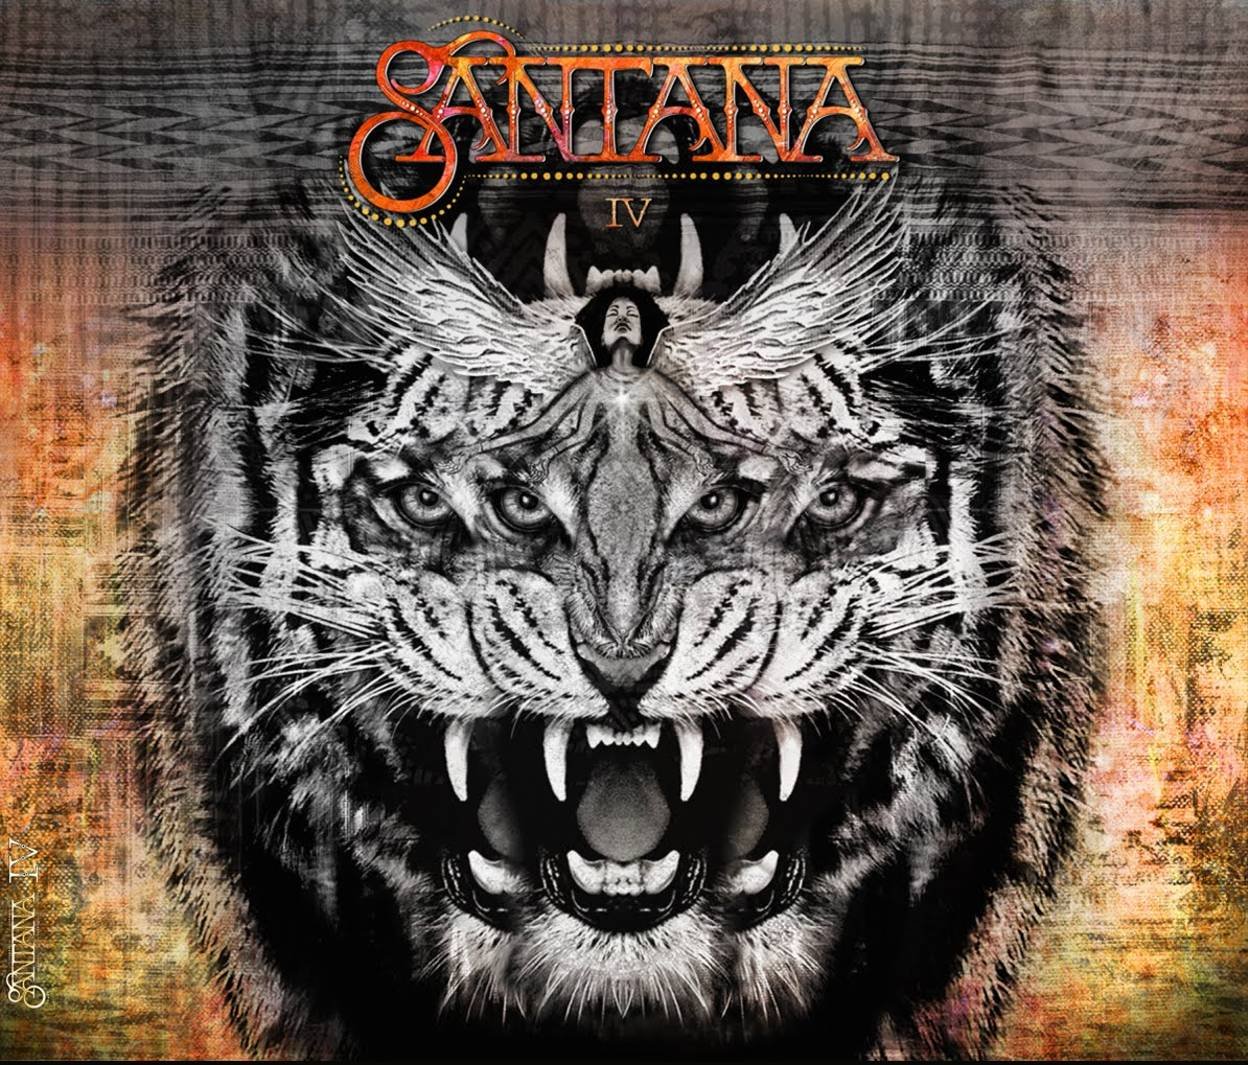 Santana-Santana IV-24-48-WEB-FLAC-2016-OBZEN